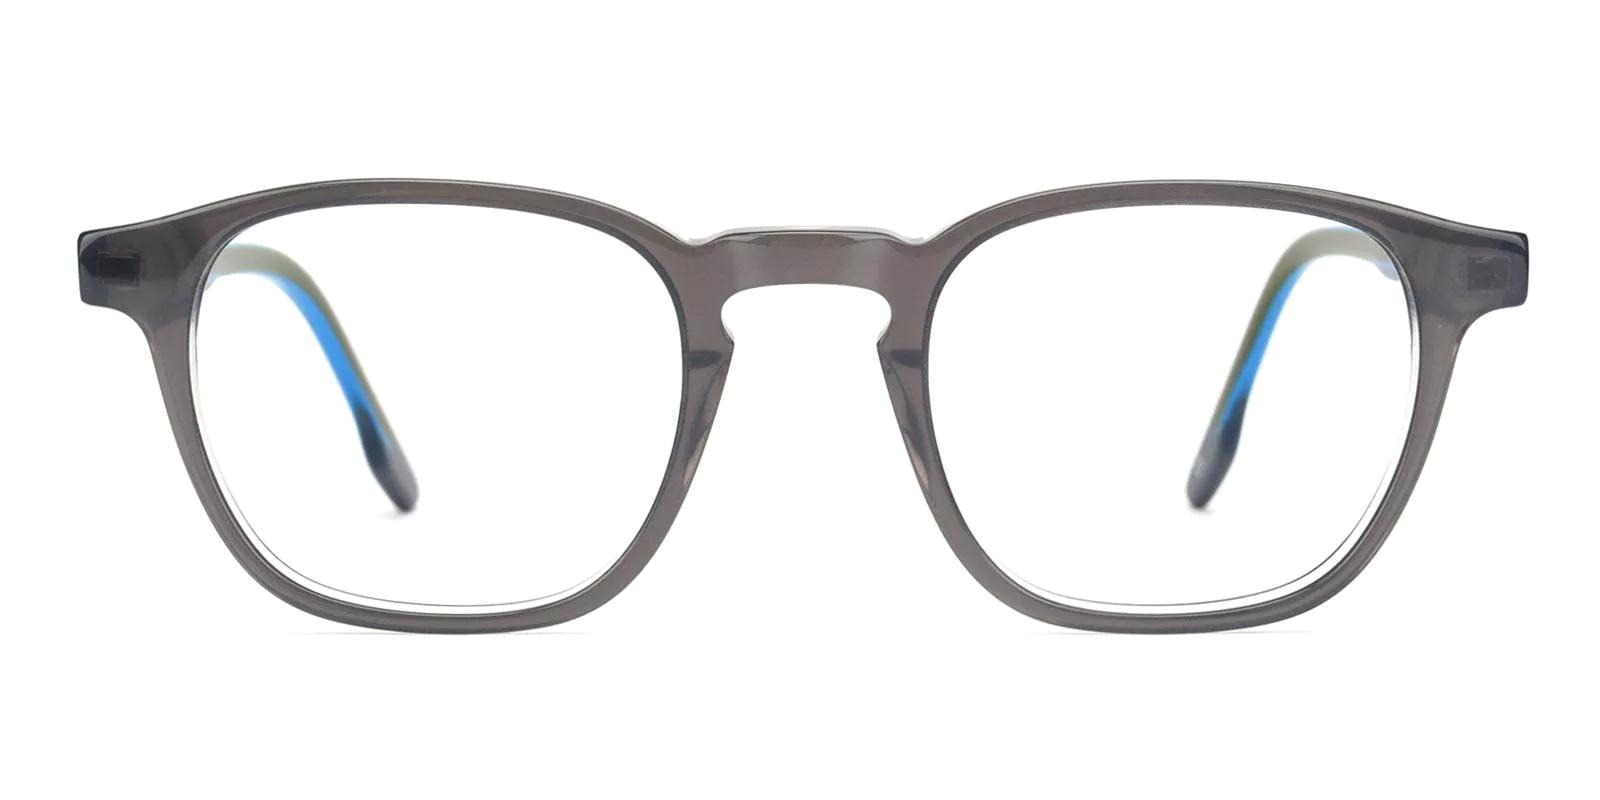 Larudal Gray Acetate Eyeglasses , SpringHinges , UniversalBridgeFit Frames from ABBE Glasses